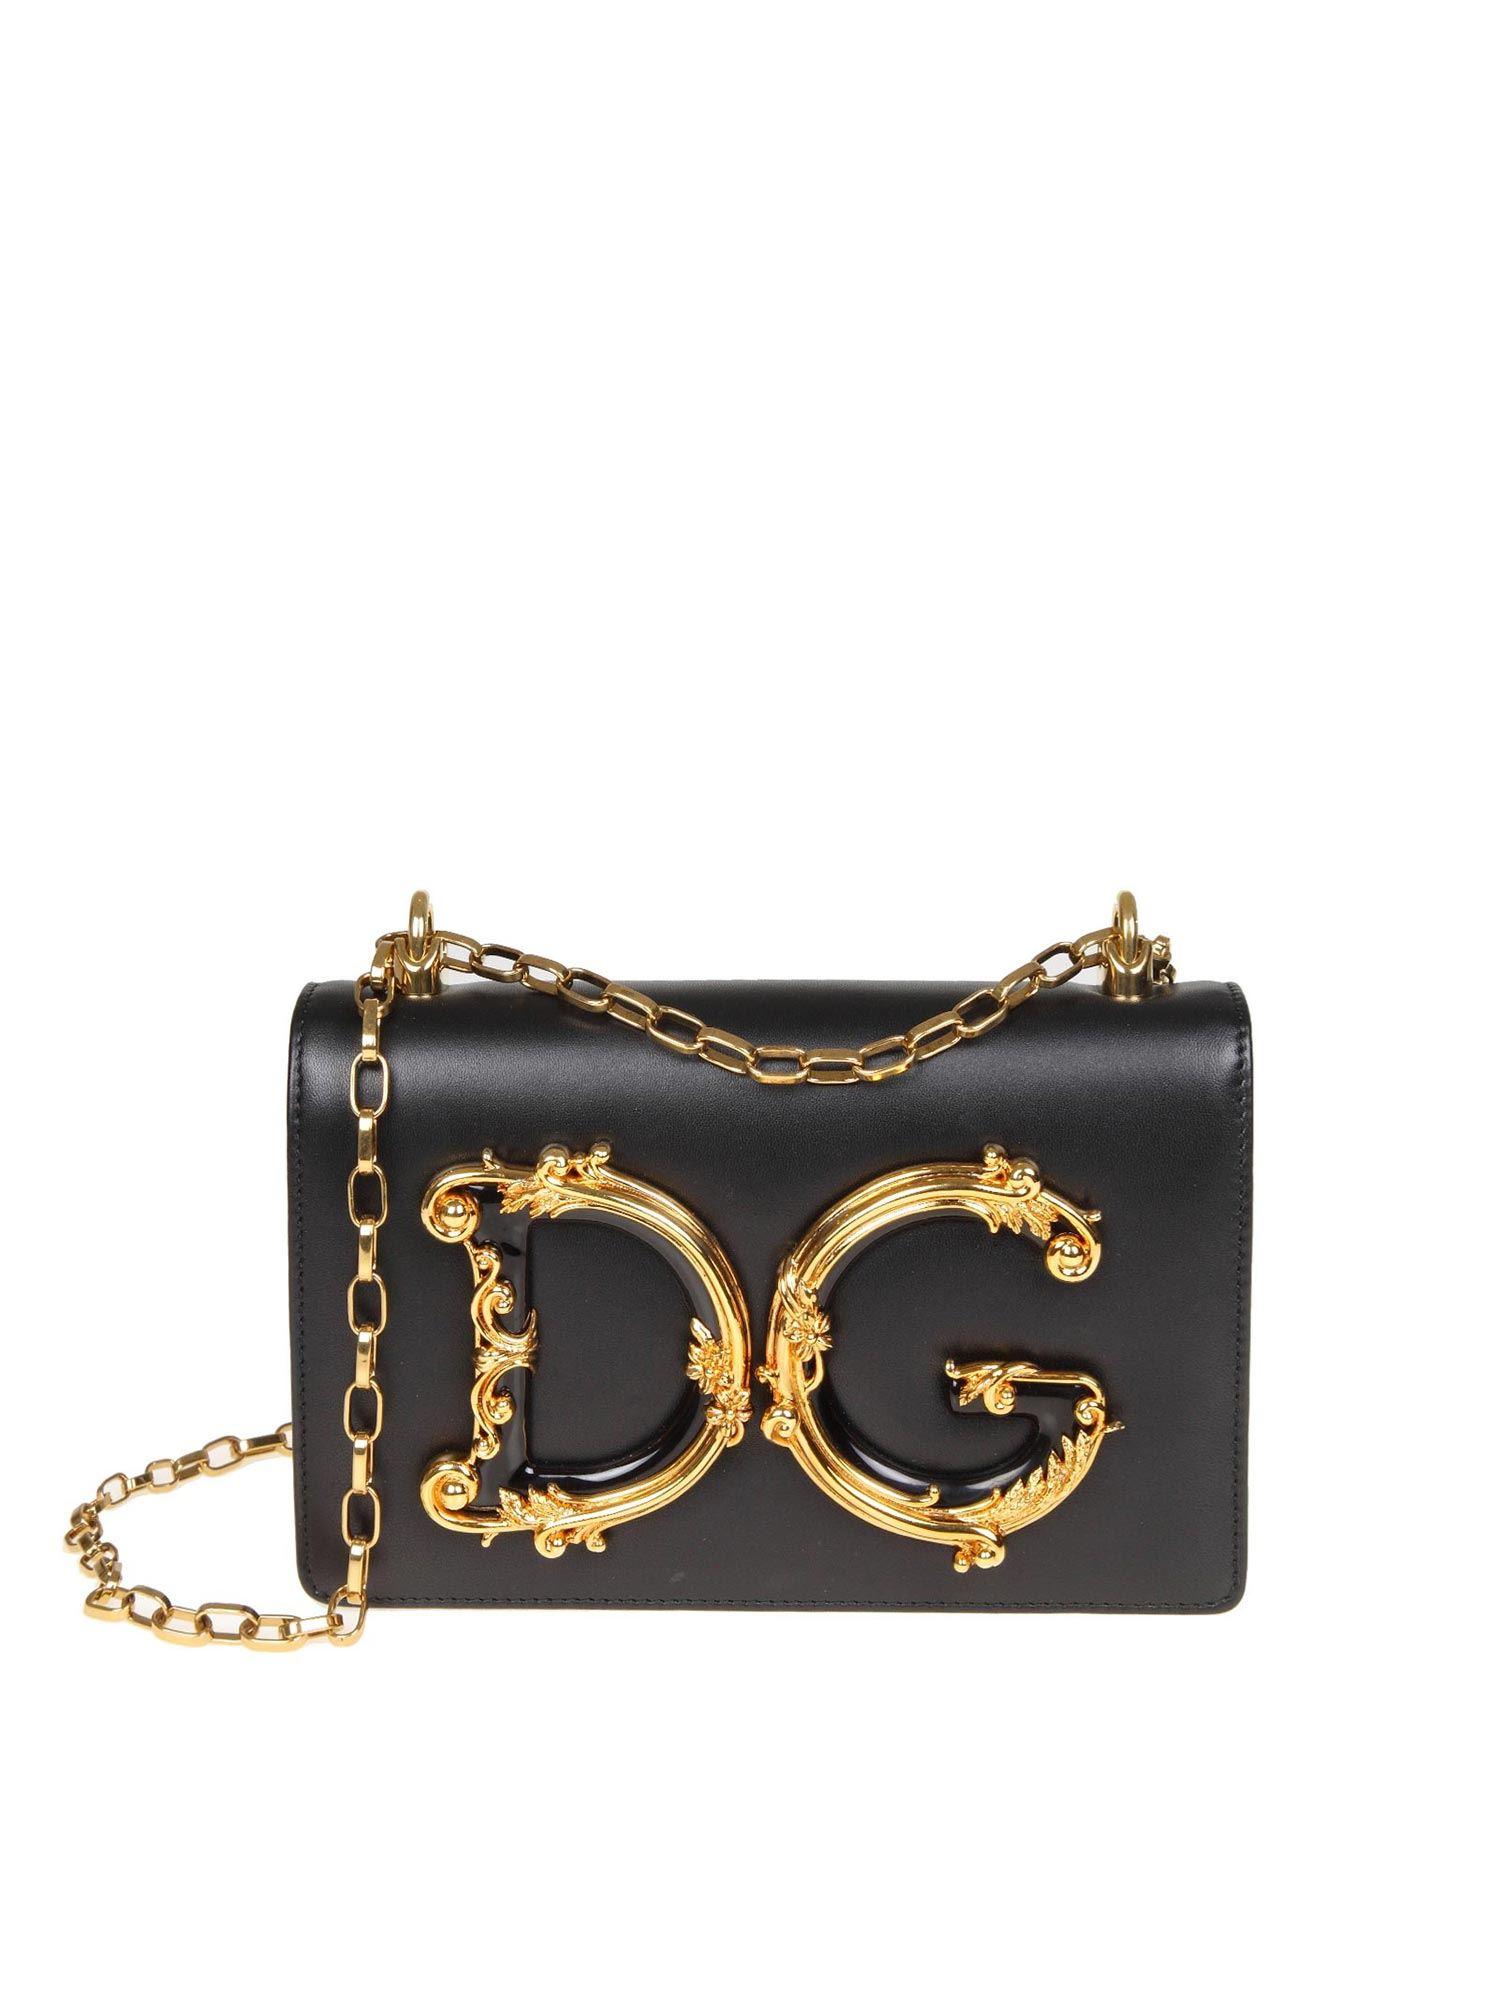 dolce and gabbana black purse